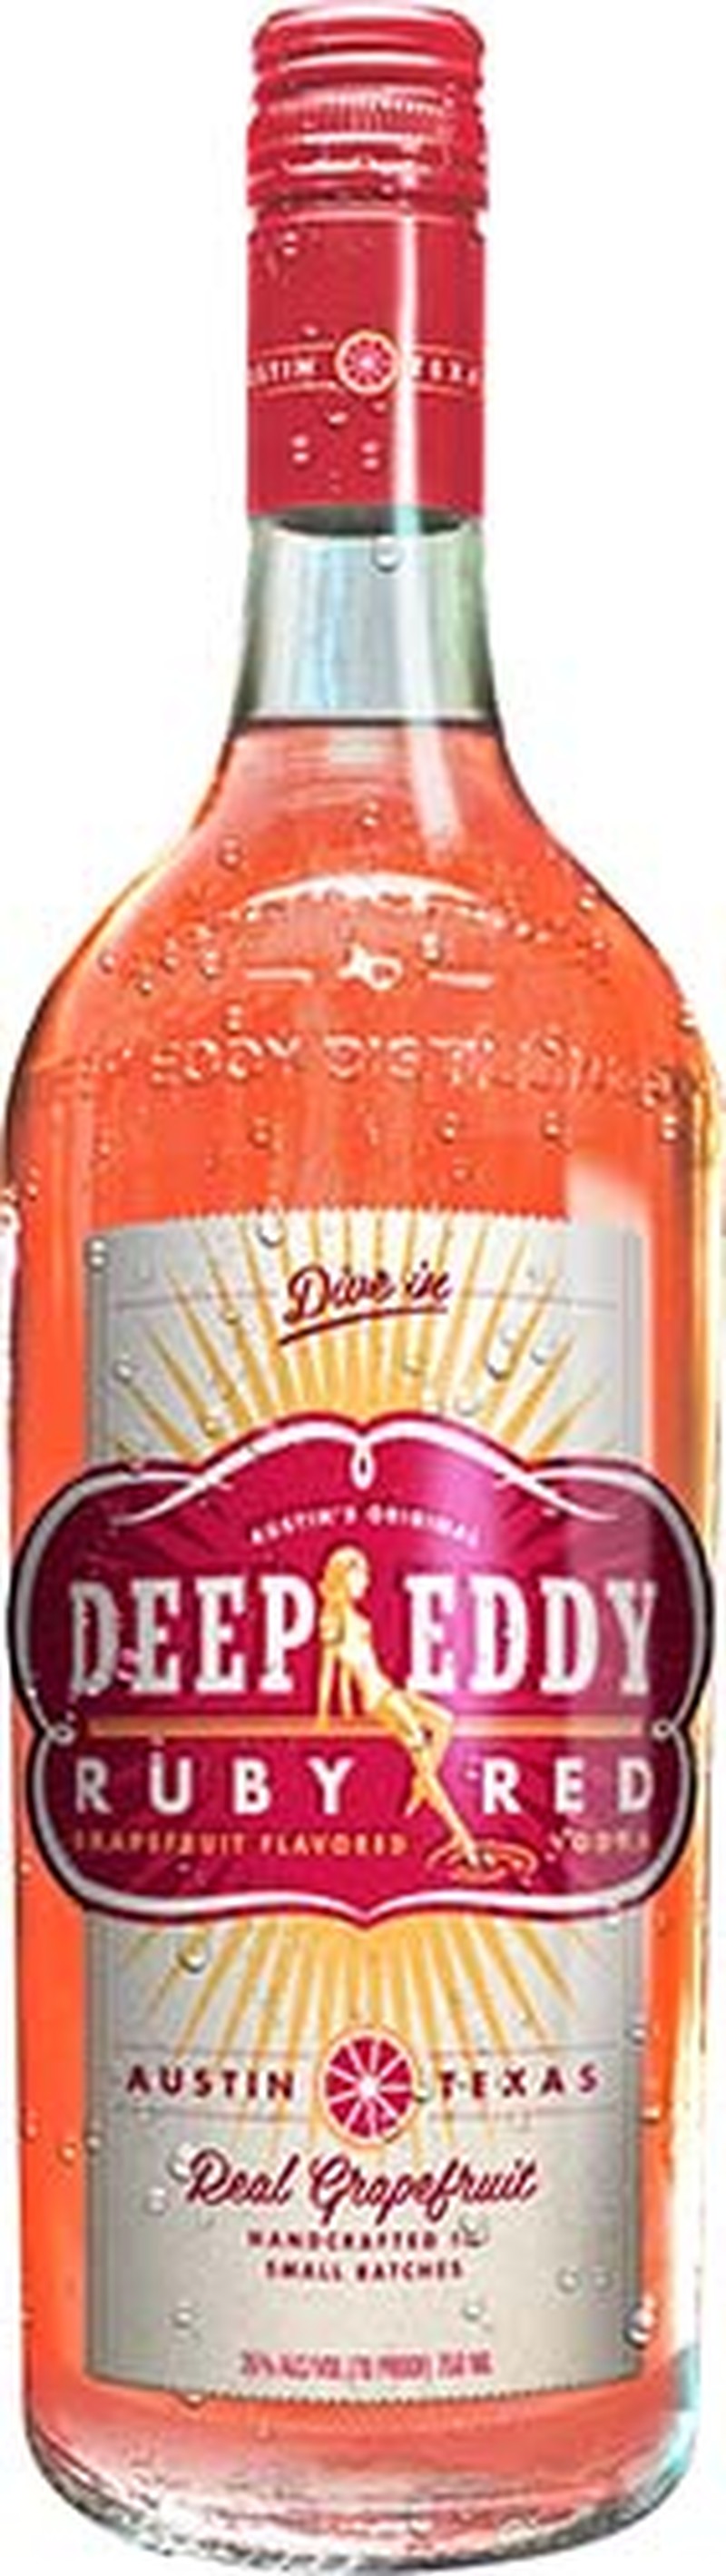 DEEP EDDY RUBY RED VODKA 750